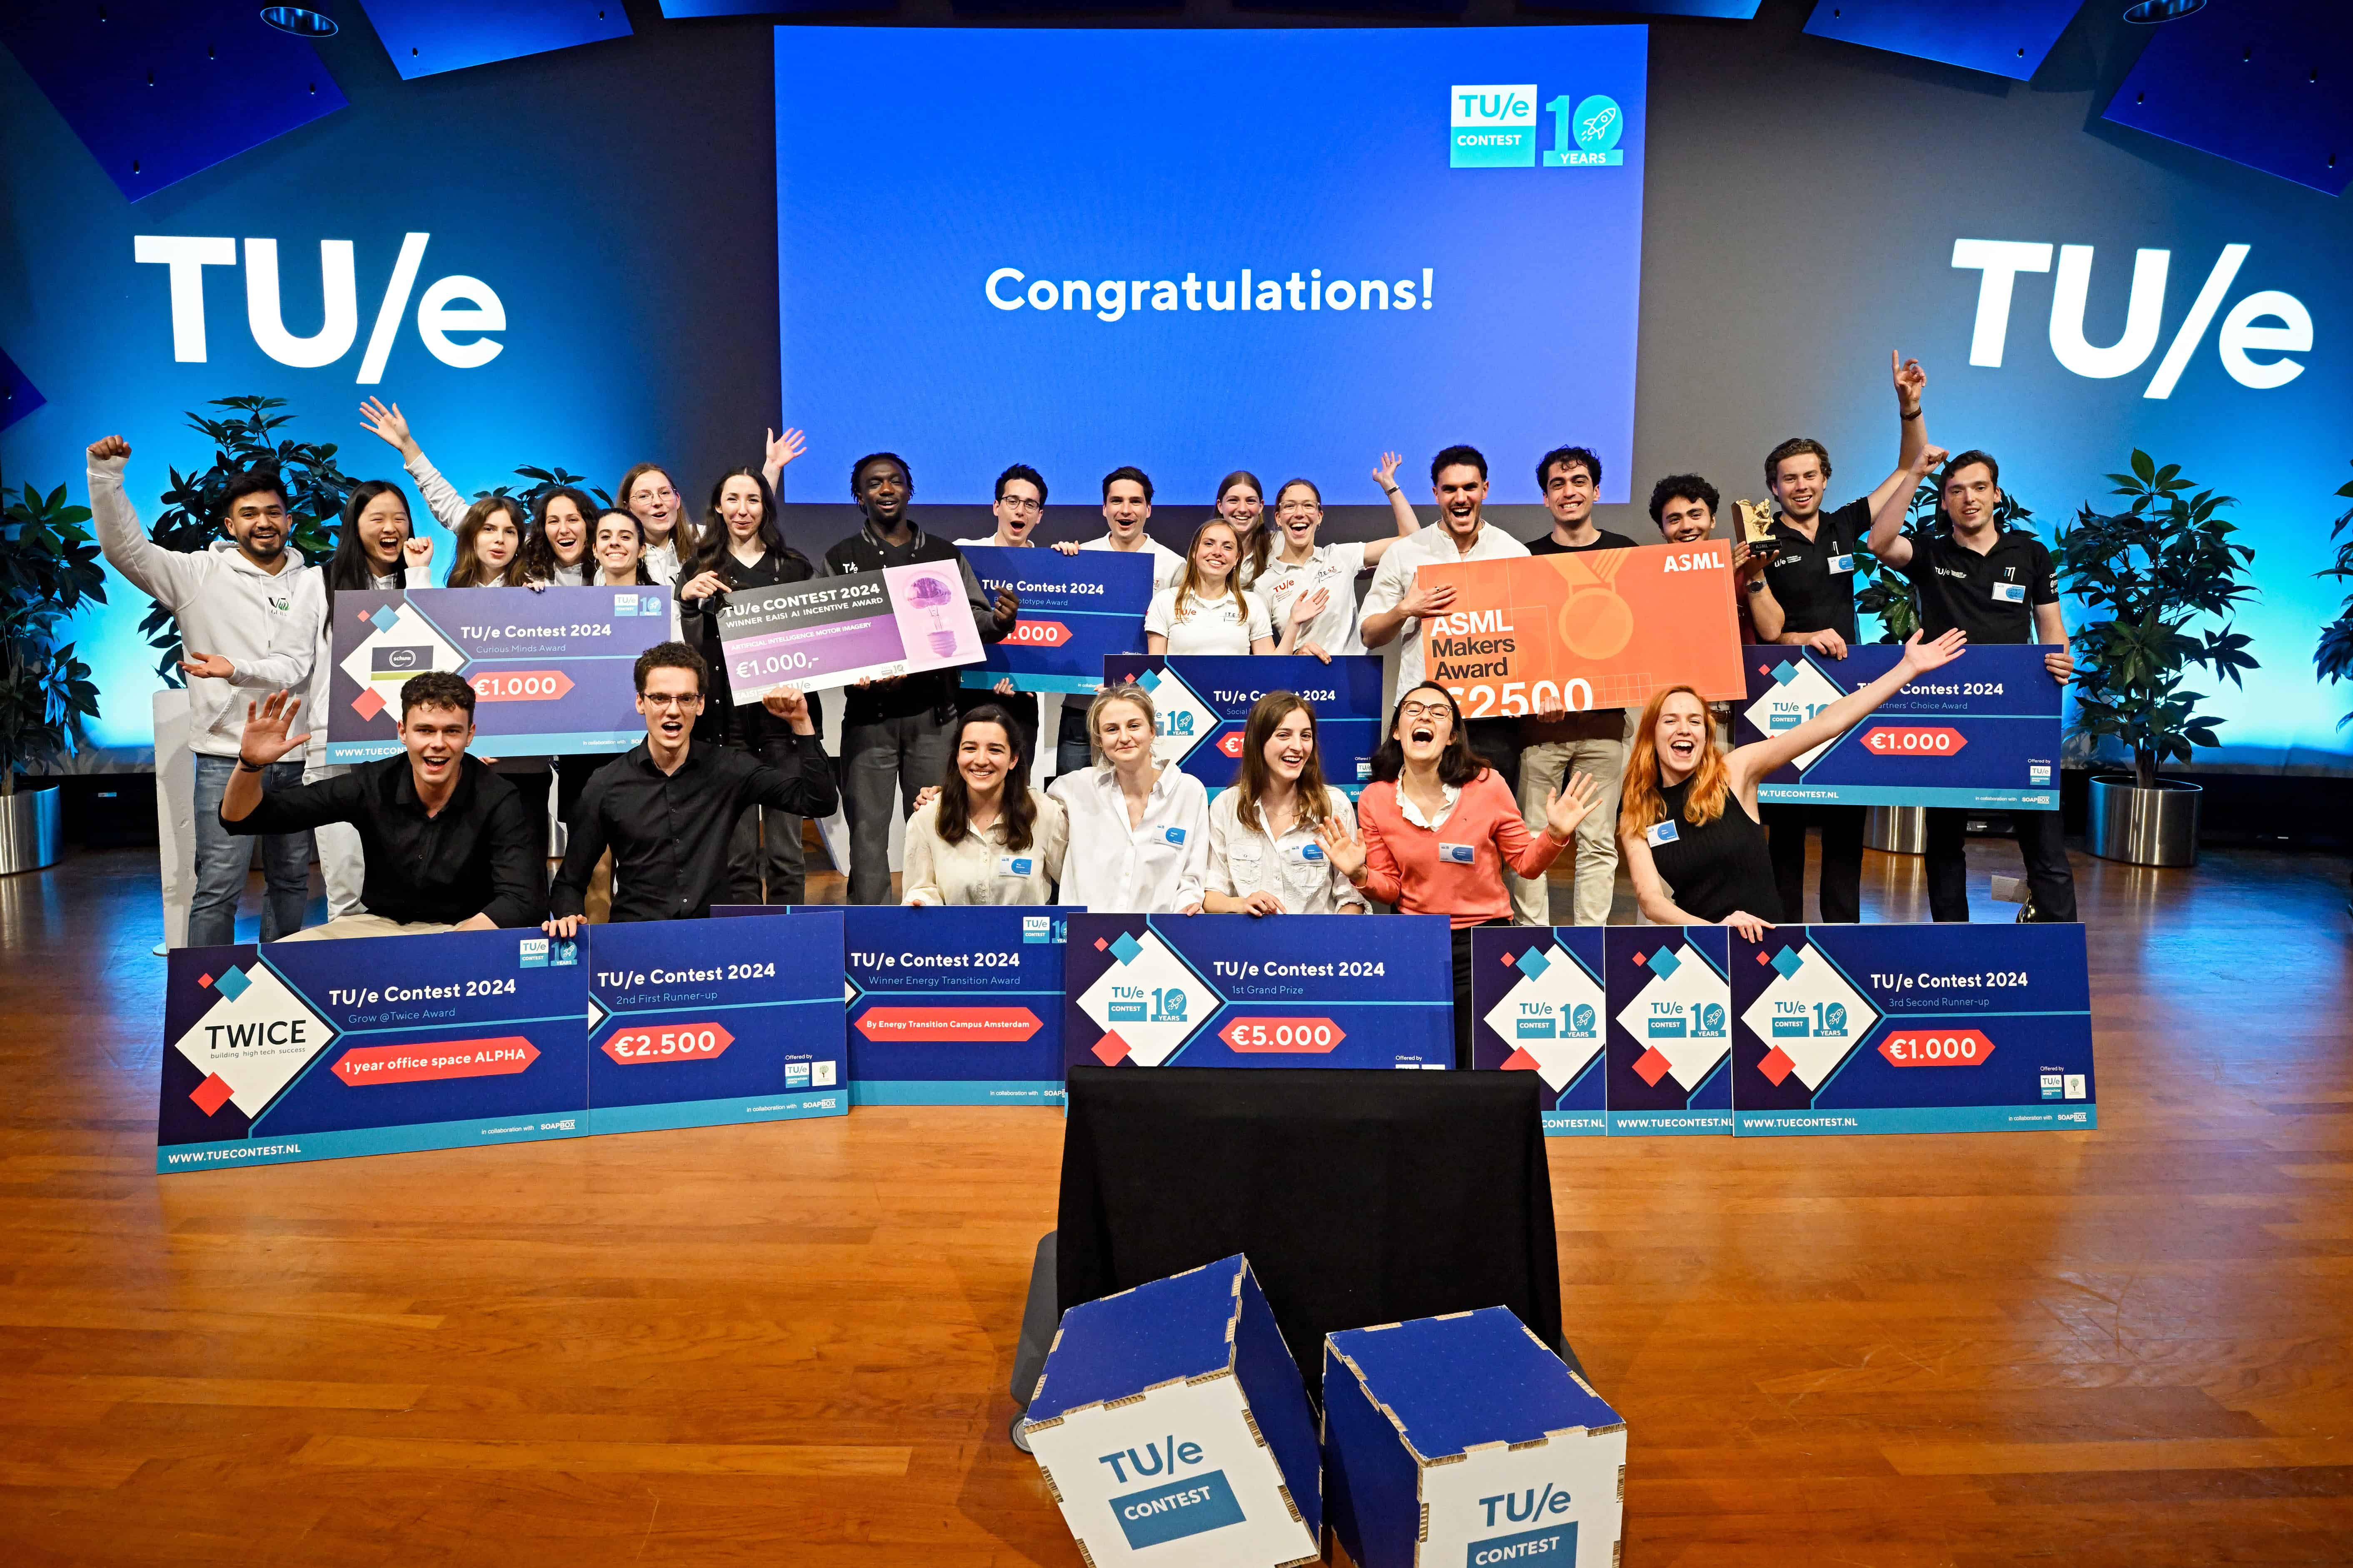 TU/e Contest geeft studenten met marktwaardige innovaties een podium